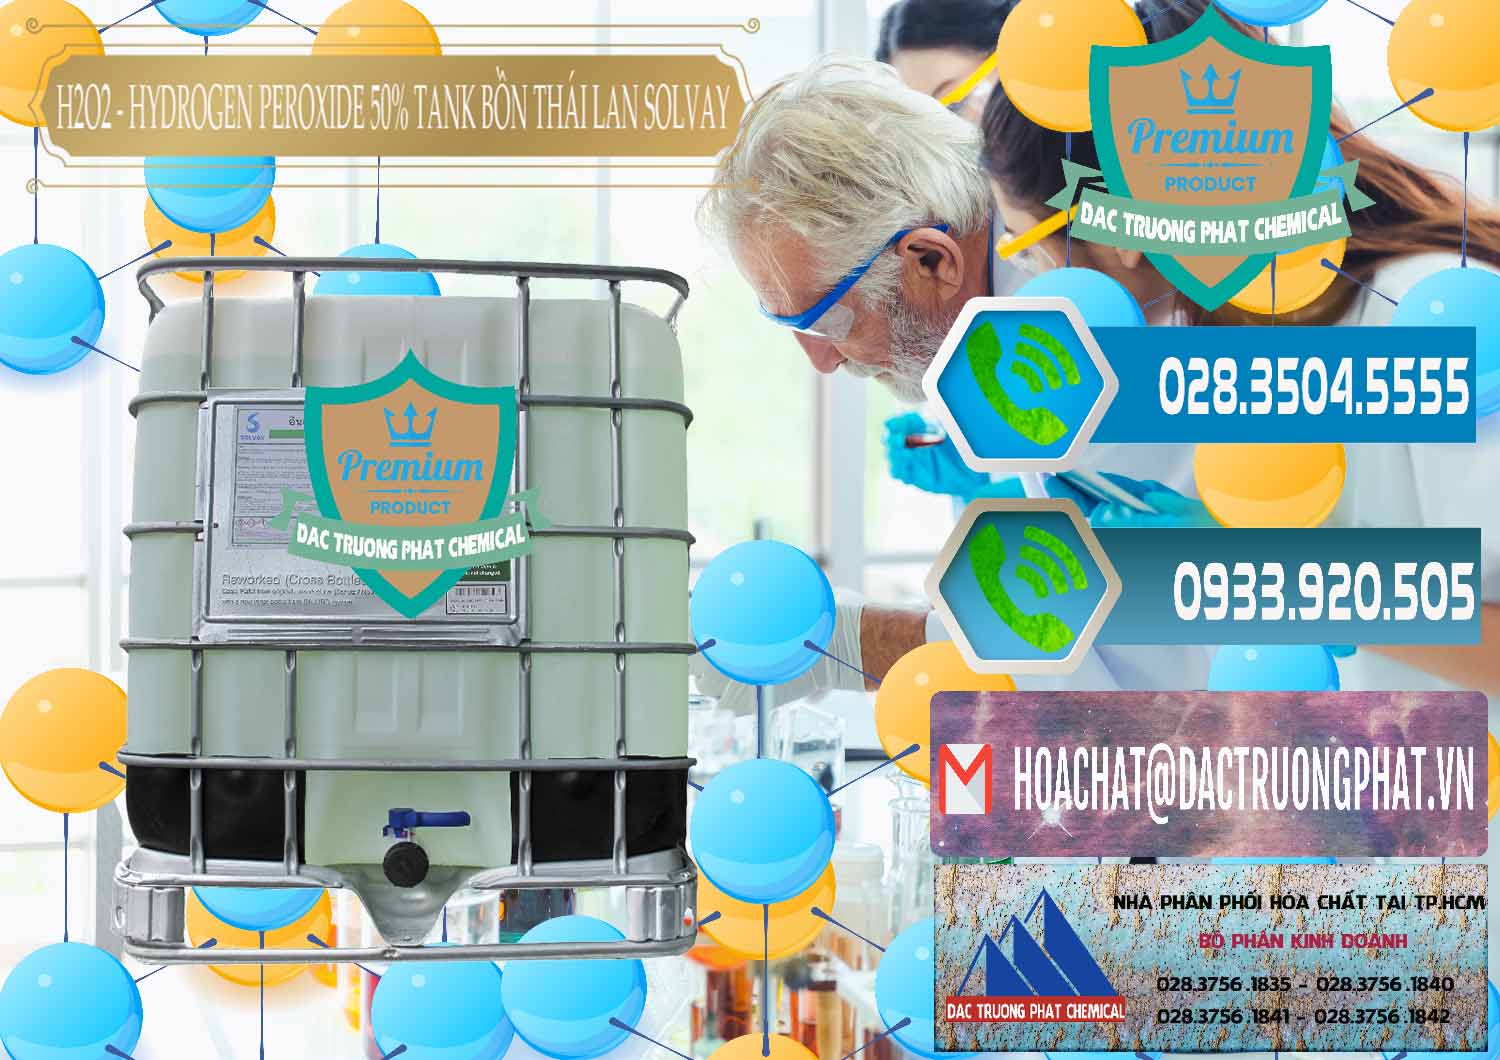 Nơi chuyên cung cấp _ bán H2O2 - Hydrogen Peroxide 50% Tank IBC Bồn Thái Lan Solvay - 0072 - Kinh doanh ( phân phối ) hóa chất tại TP.HCM - congtyhoachat.net